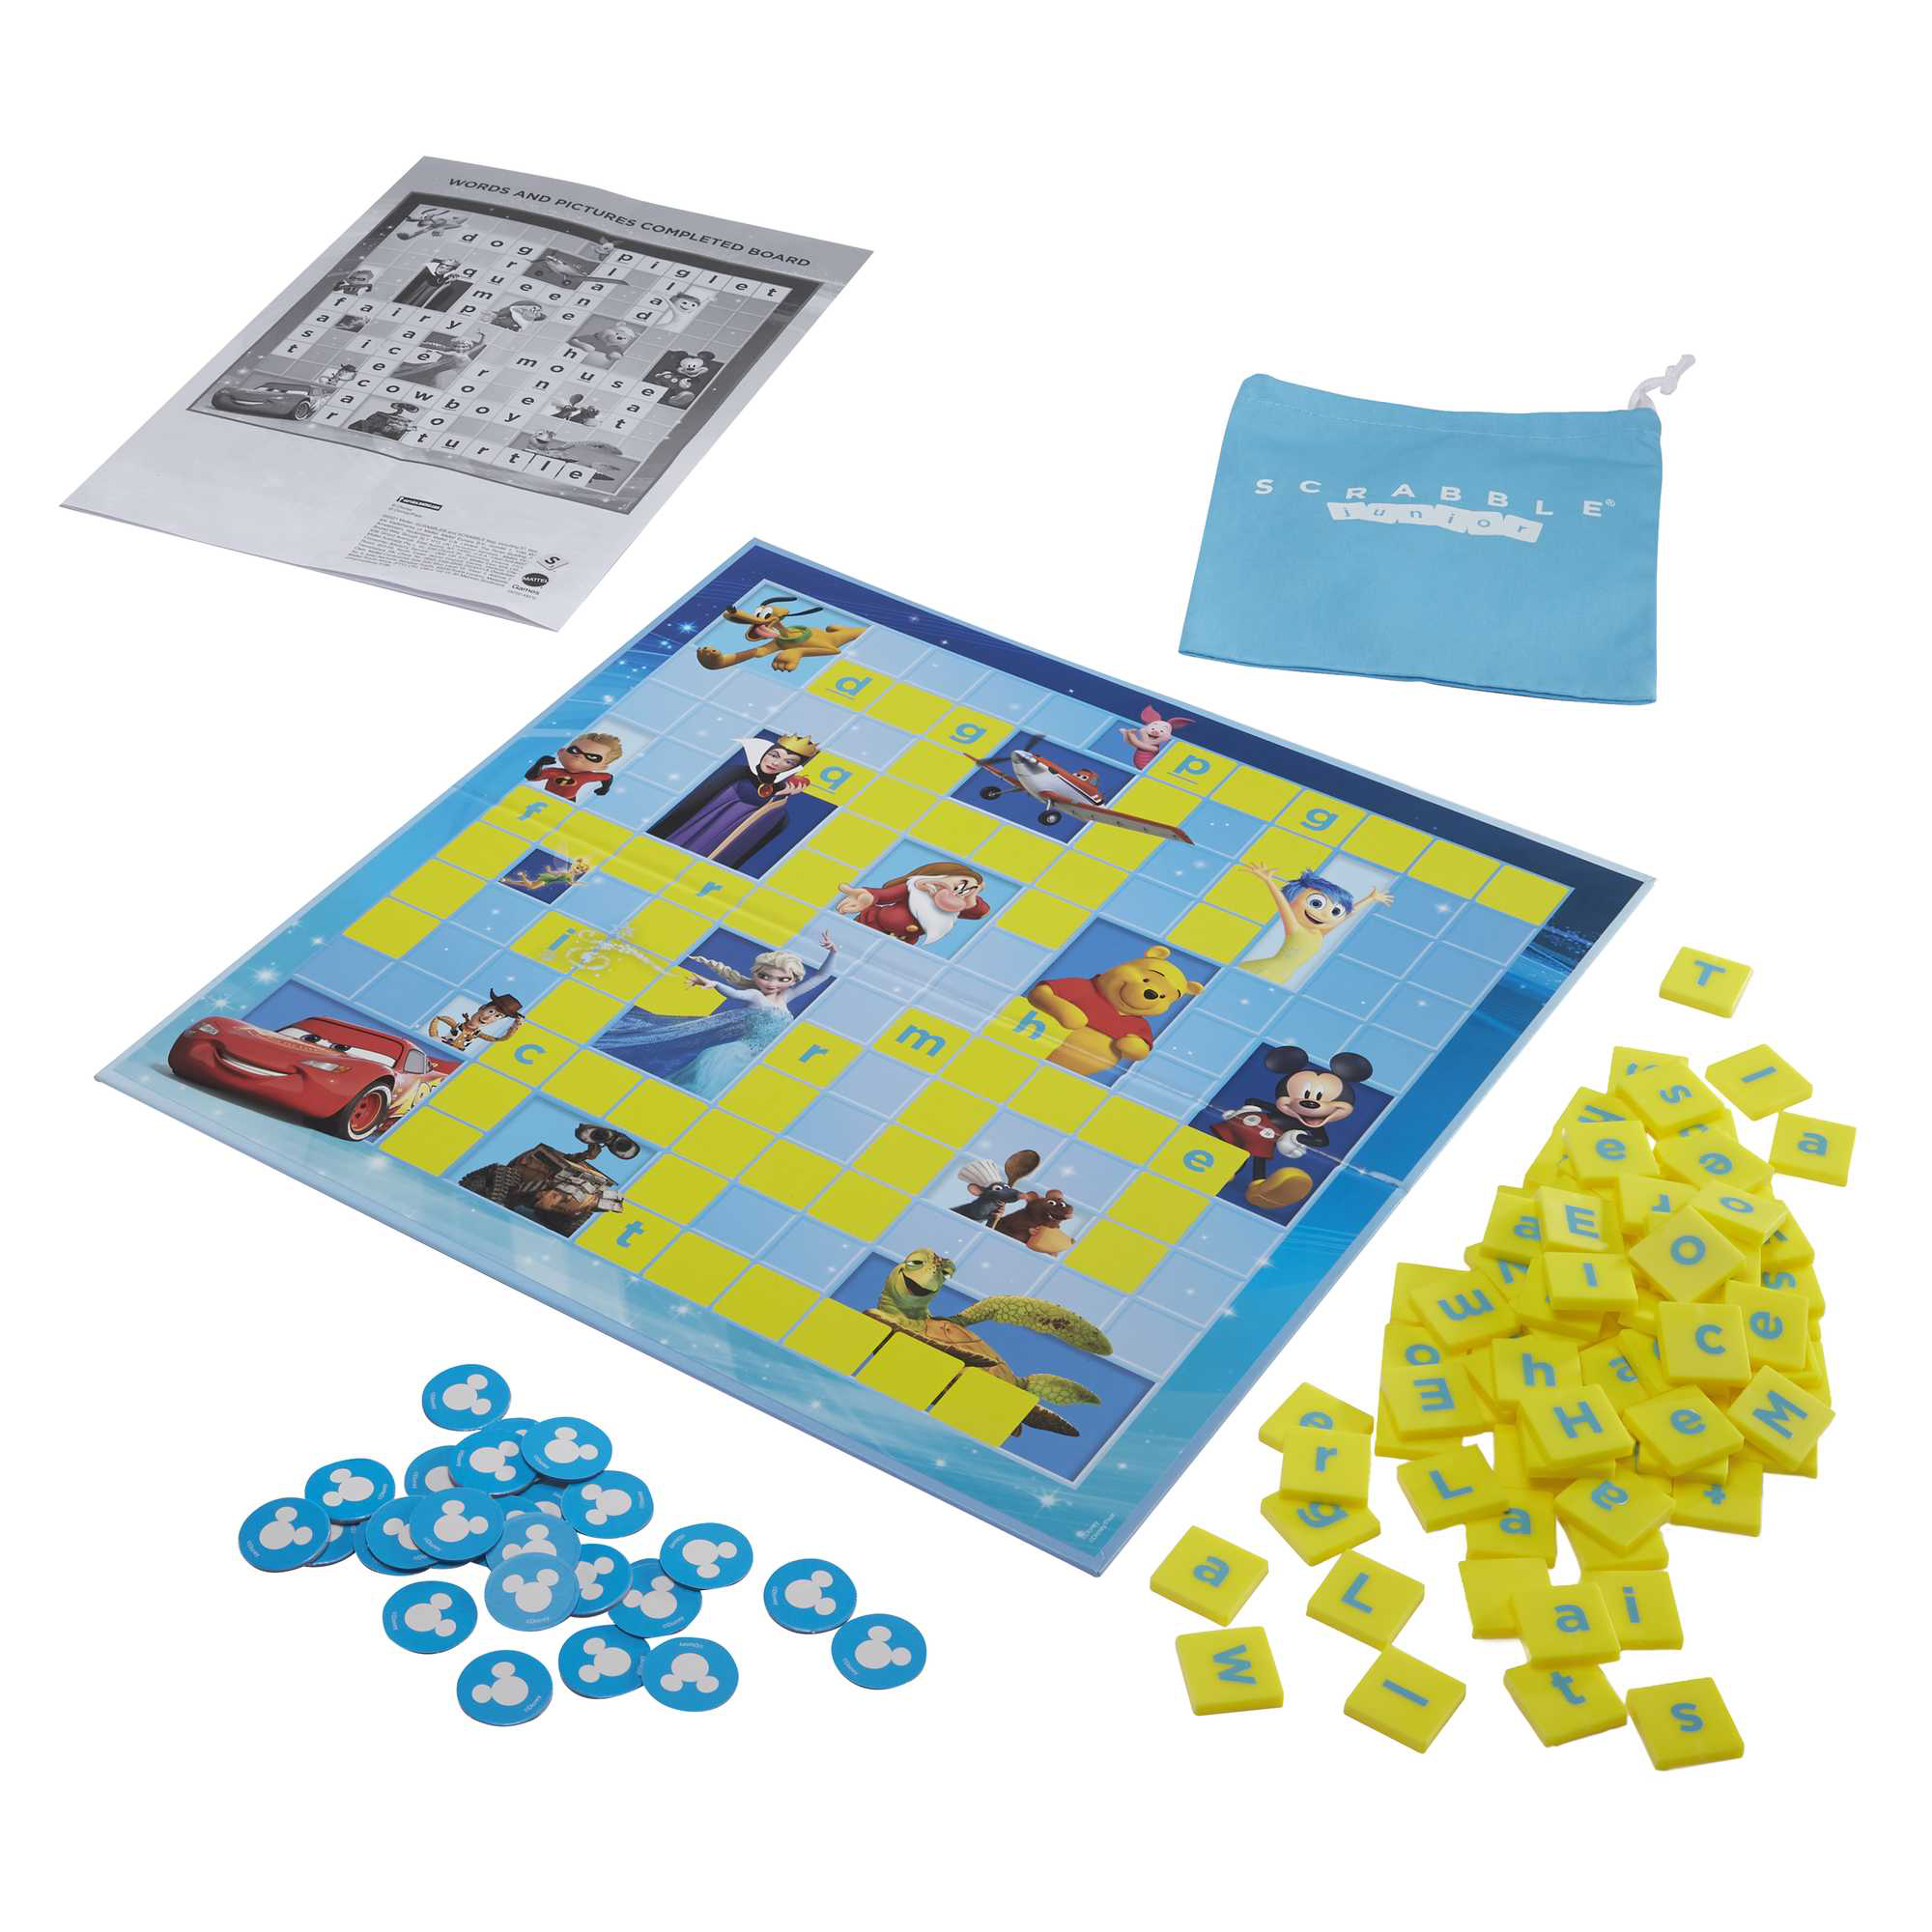 Mattel games - scrabble junior disney, il gioco da tavolo delle parole crociate con immagini dei personaggi disney, per bambini 6+ anni, hfk22 - MATTEL GAMES